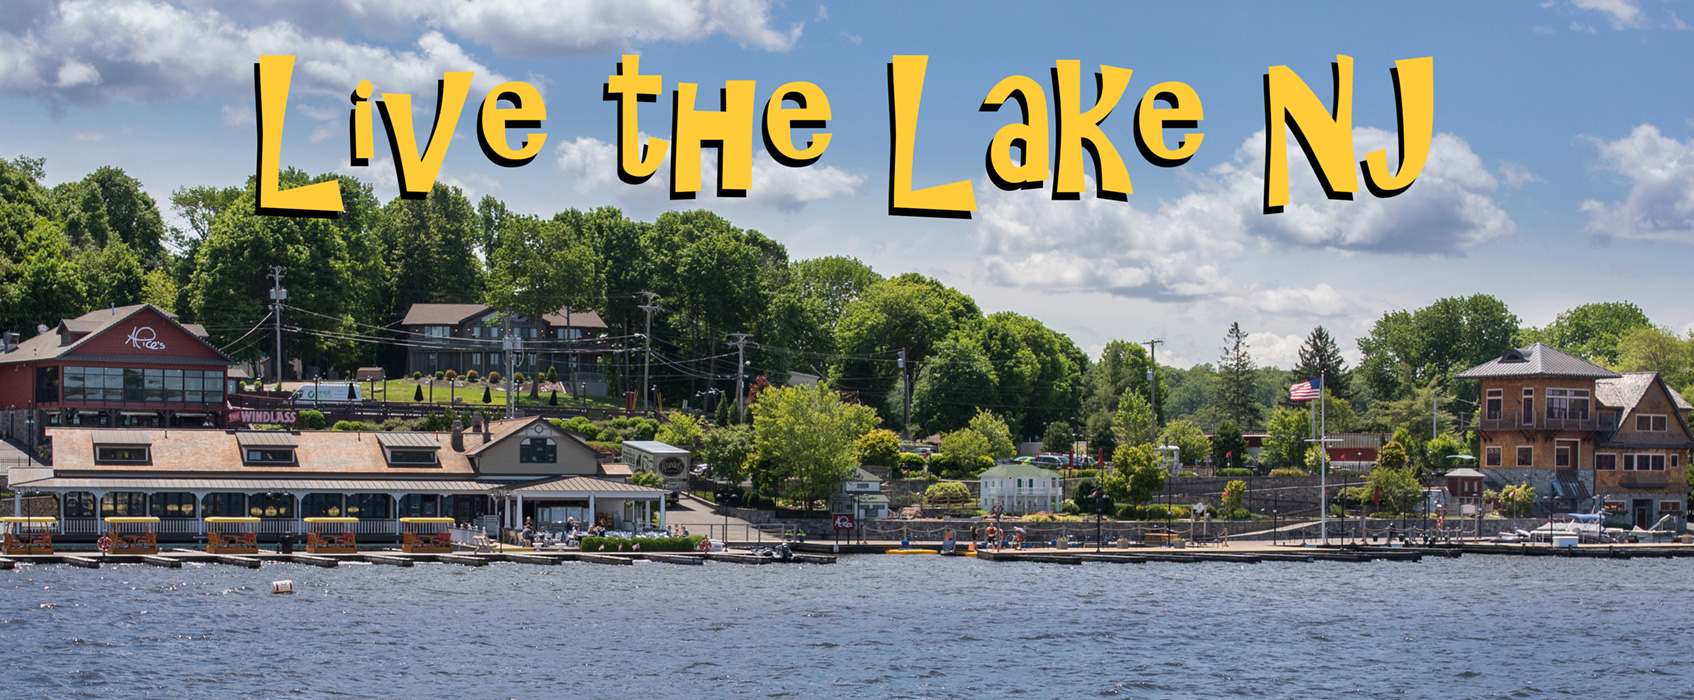 Live the Lake NJ: Lake Hopatcong